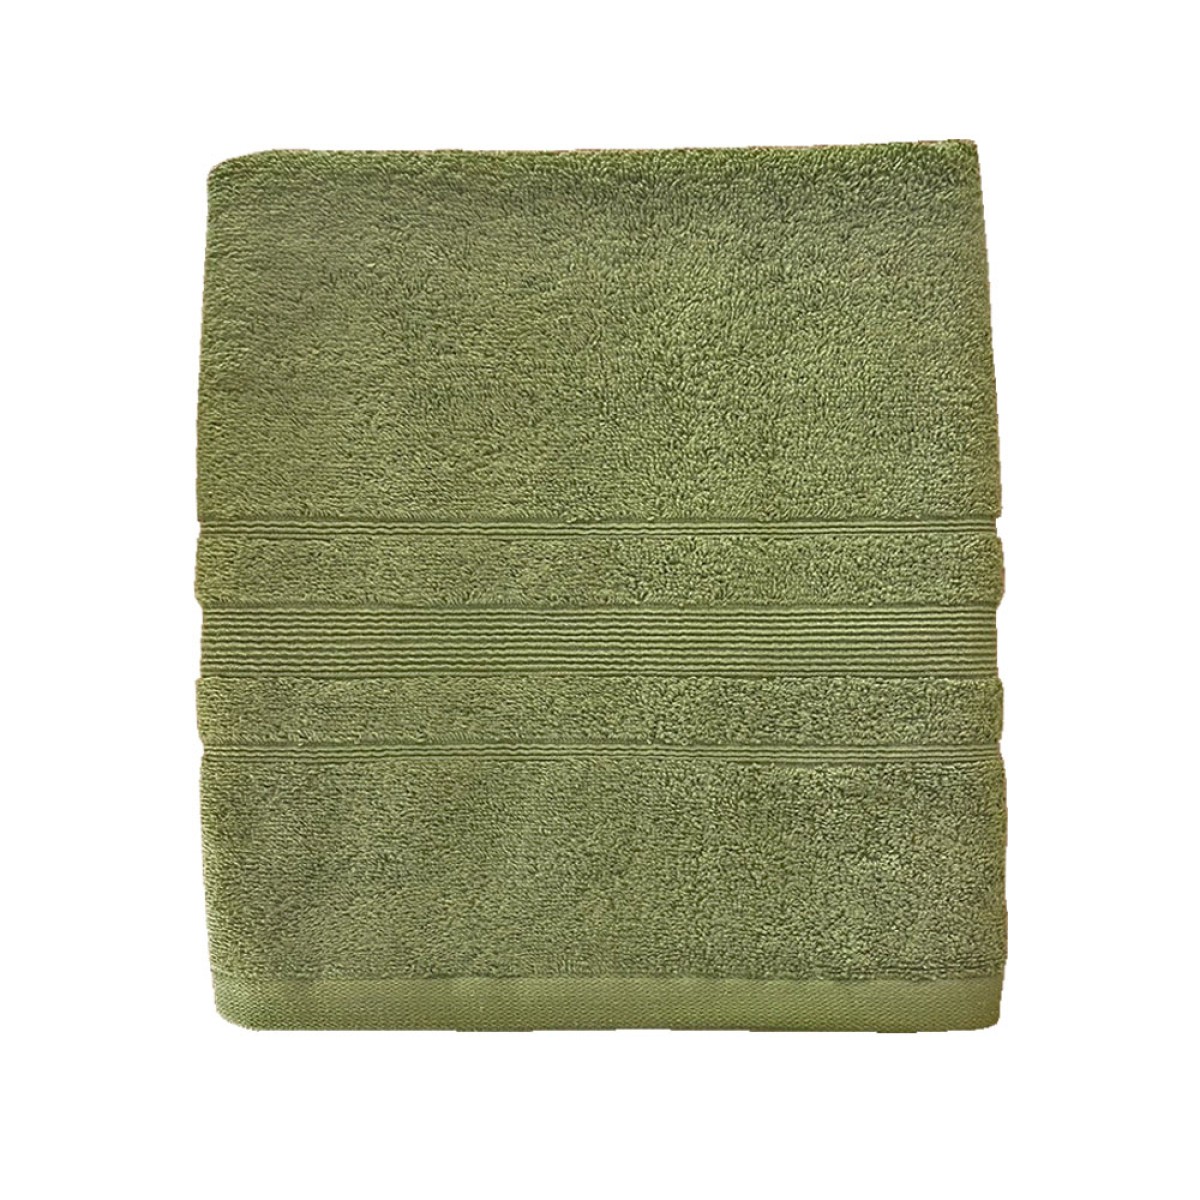 Πετσέτα Σώματος 550grs (70x140) 100% Βαμβάκι με μπορντούρα με ανάγλυφο σχέδιο λαδί χρώμα Sidirela Line E-3203-1